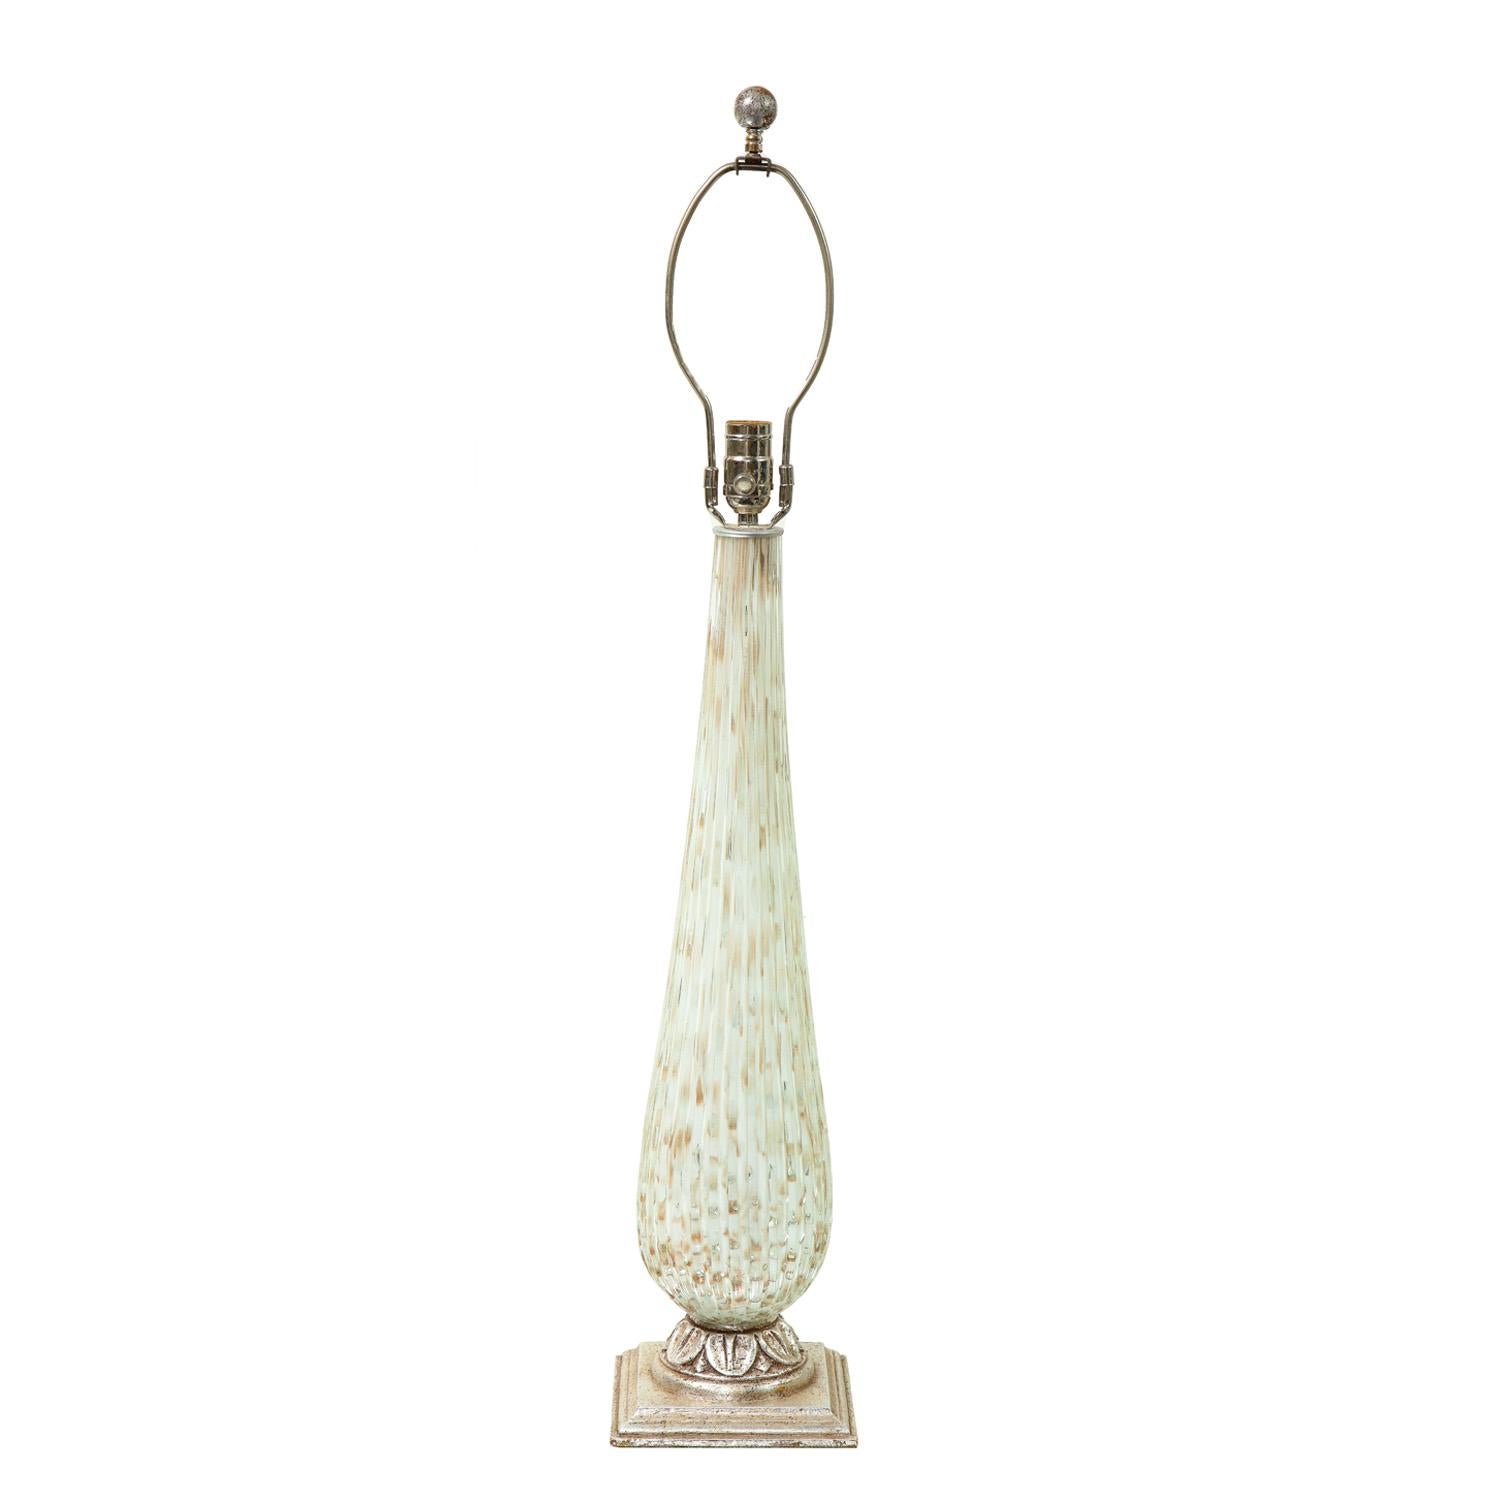 Lampe de table en verre de Murano sommerso transparent et blanc, nervuré, avec inclusions de bullicante et de feuilles d'or. Base en bois sculpté et fleuron en forme de boule, finition en feuille d'argent vieilli. A la manière de Barovier & Tosso, 